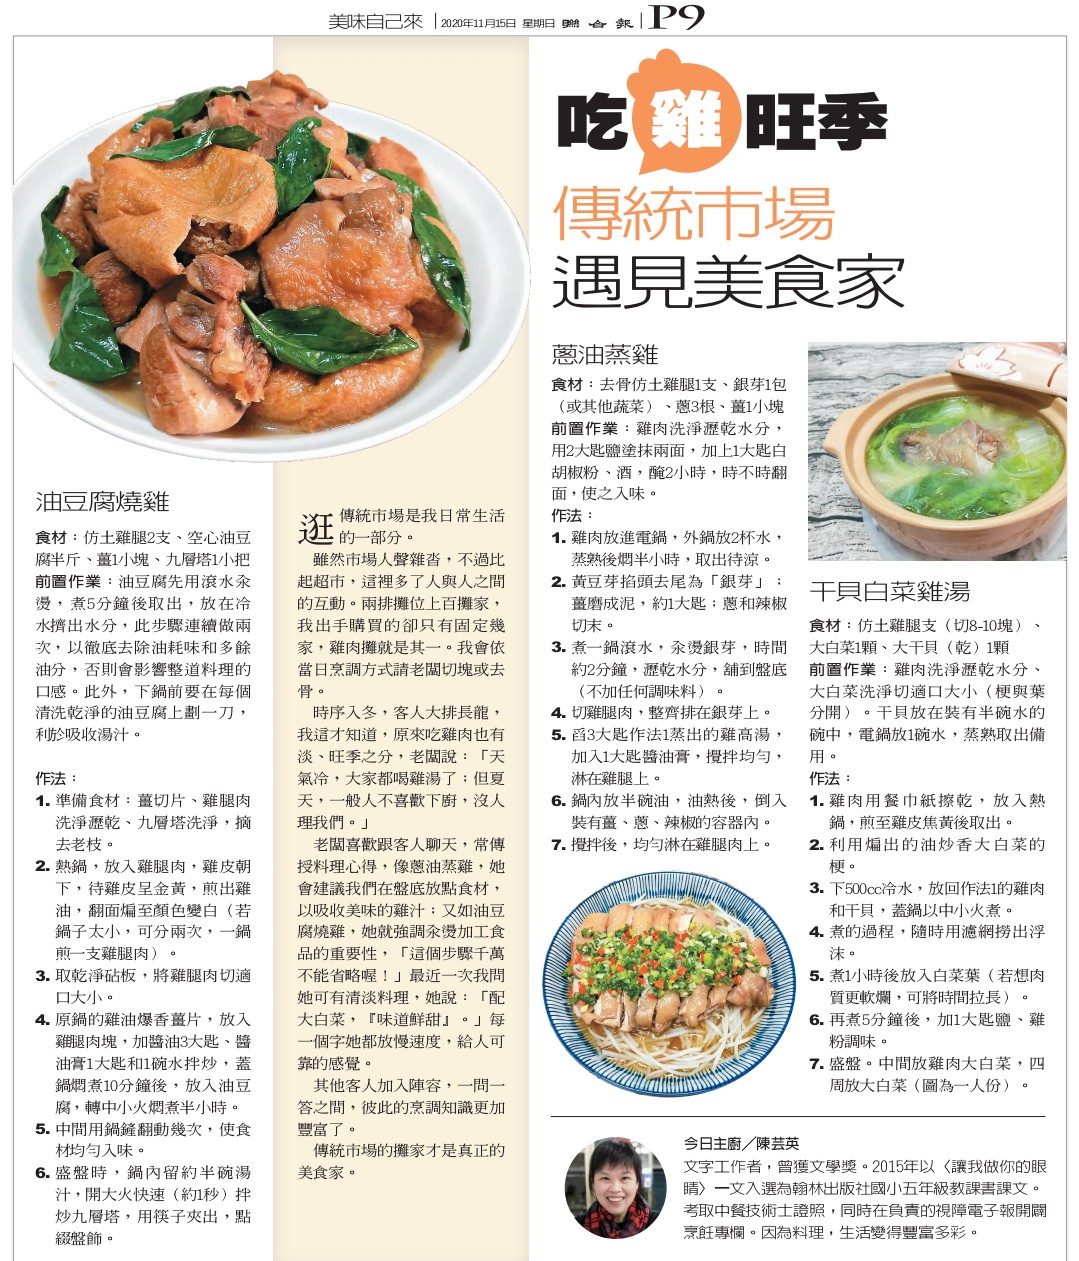 聯合報週日推出的「元氣週報」，介紹了三道我做的「雞肉料理」。